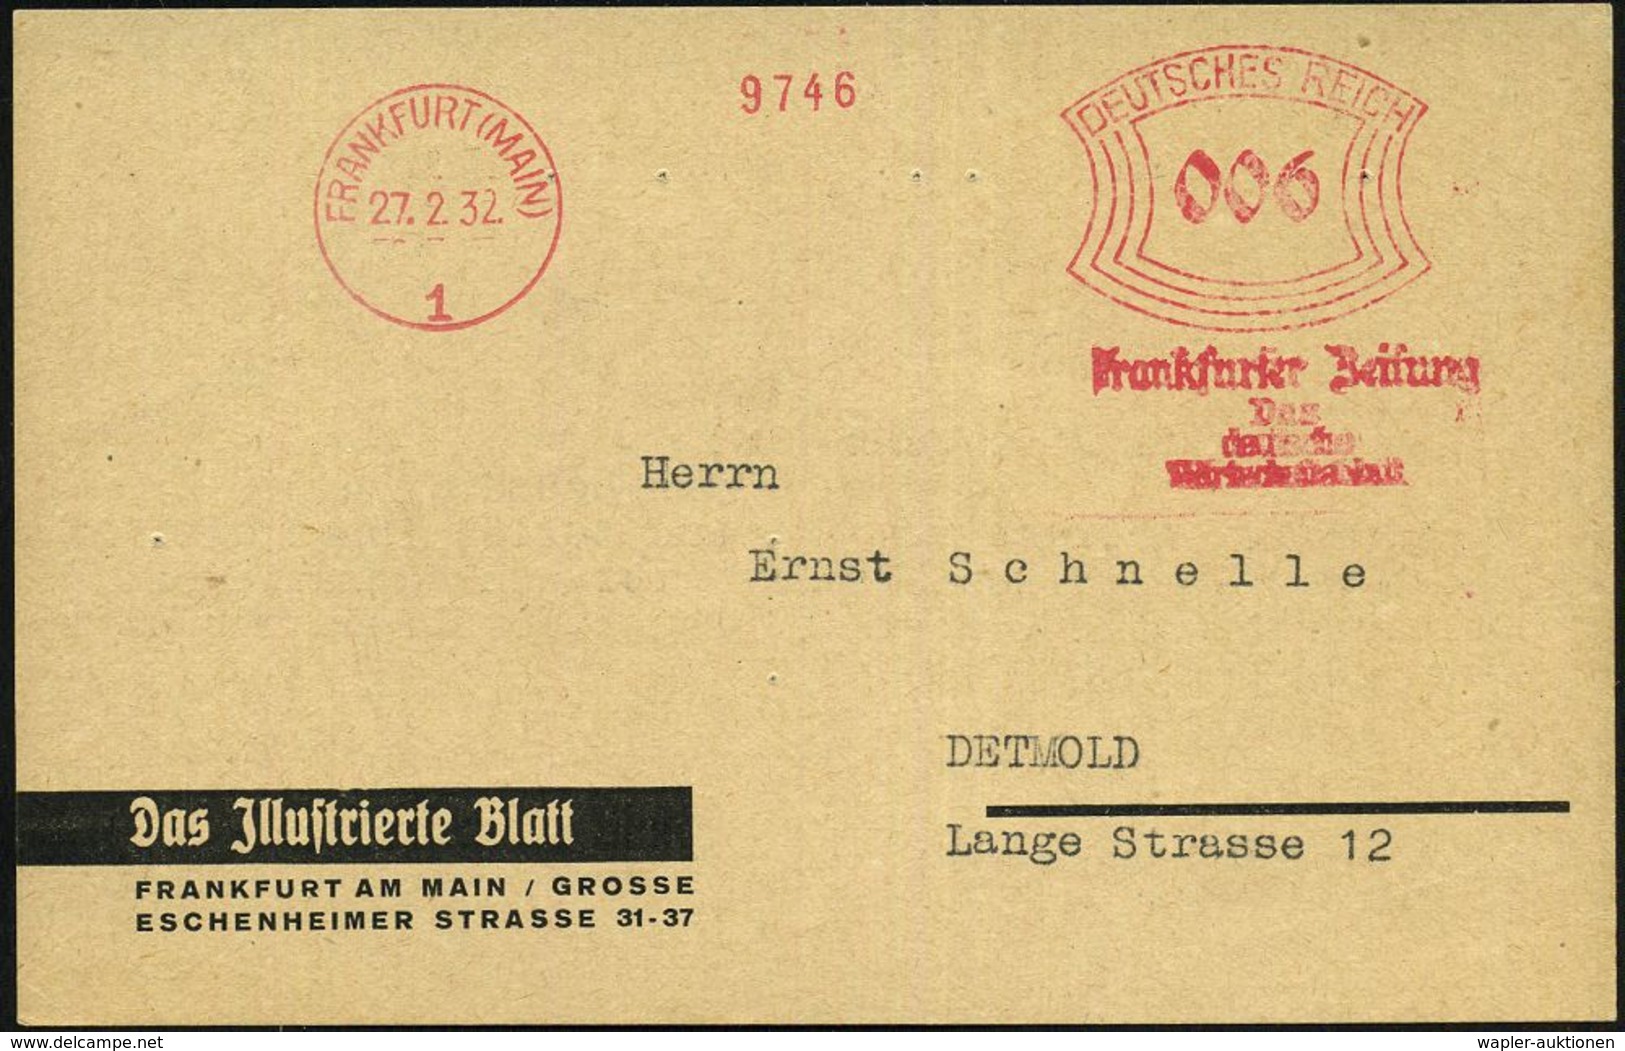 FRANKFURT (MAIN)/ 1/ Frankfurter Zeitung/ Das/ Deutsche/ Wirtschaftsblatt 1932 (27.2.) AFS (abgenutzte Maschine) Auf Fir - Ohne Zuordnung